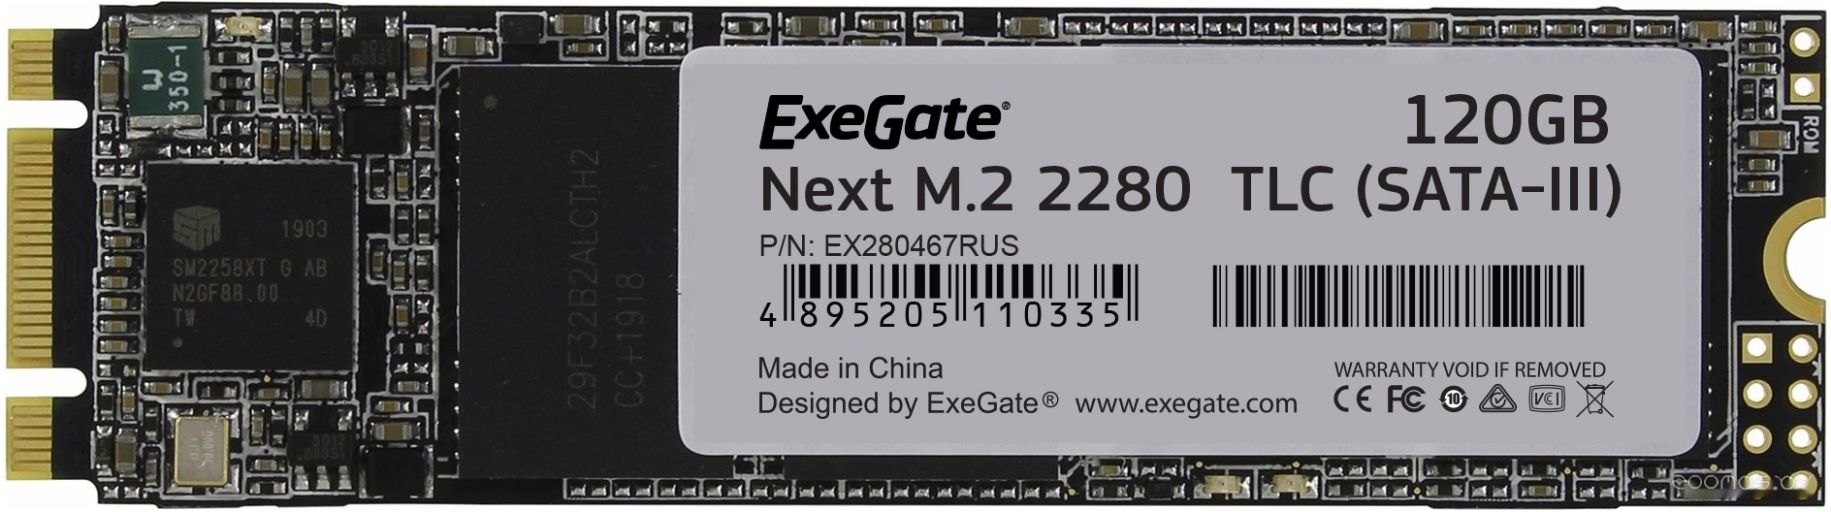 SSD Exegate Next 120GB EX280467RUS